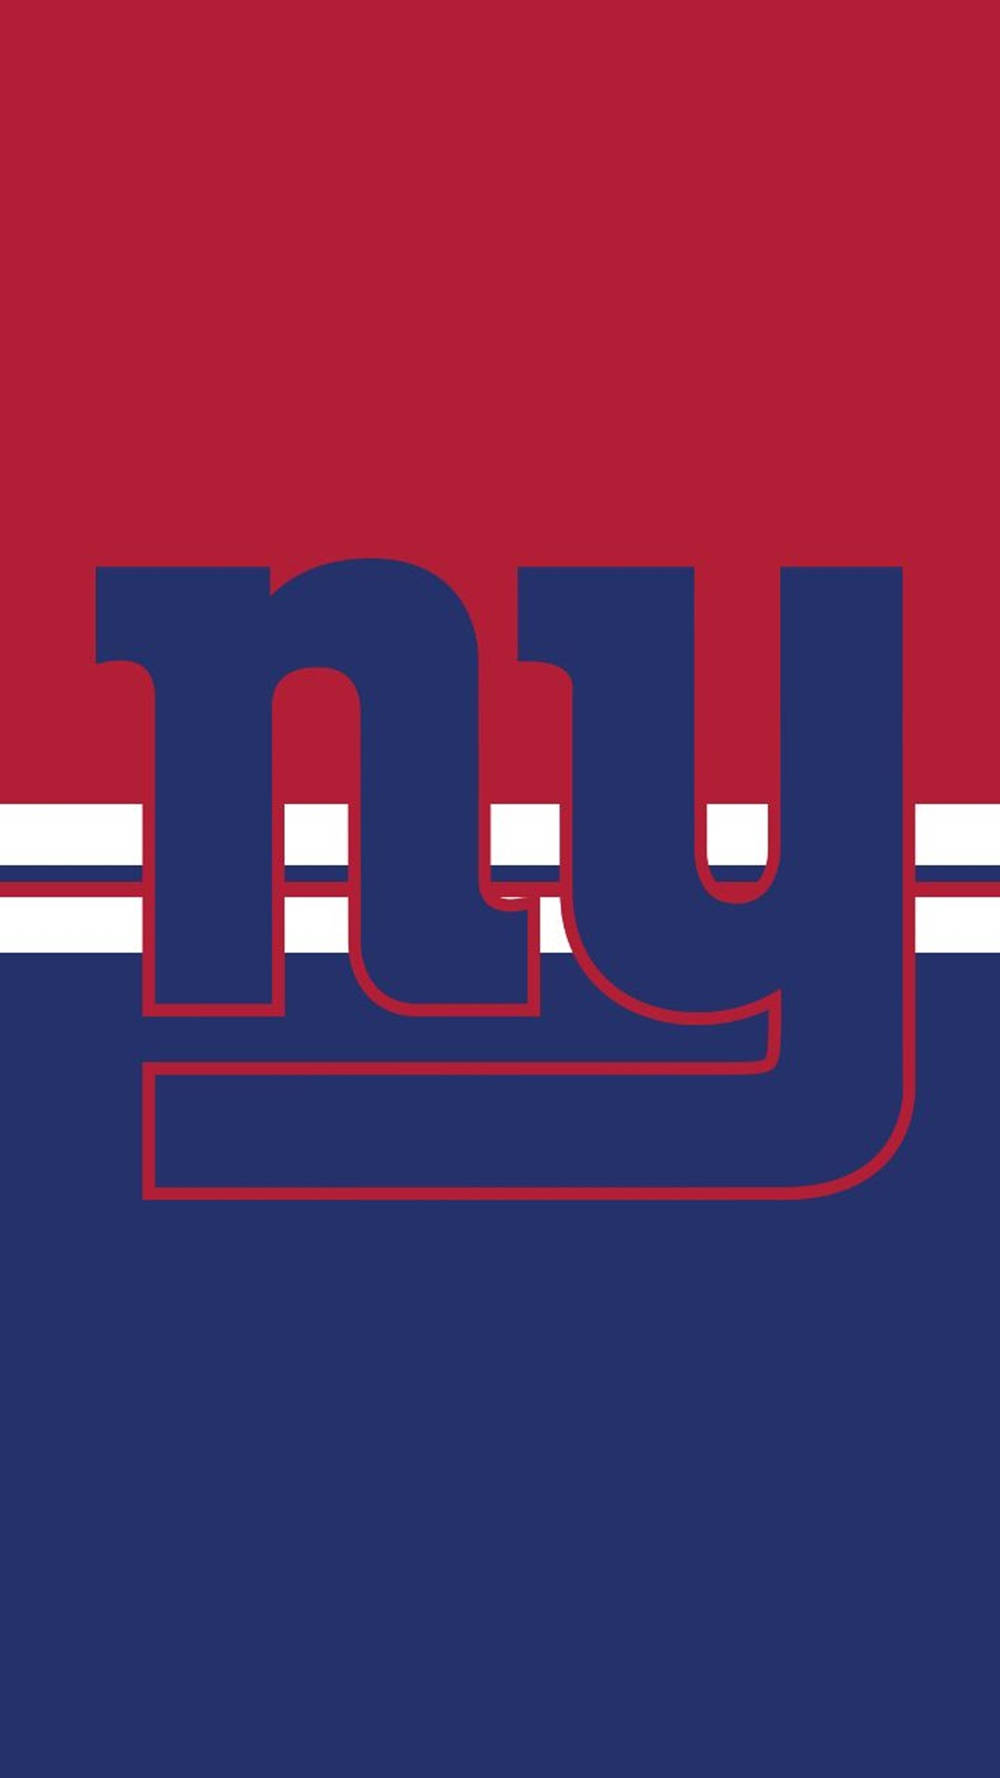 Portrait New York Giants Logo Wallpaper